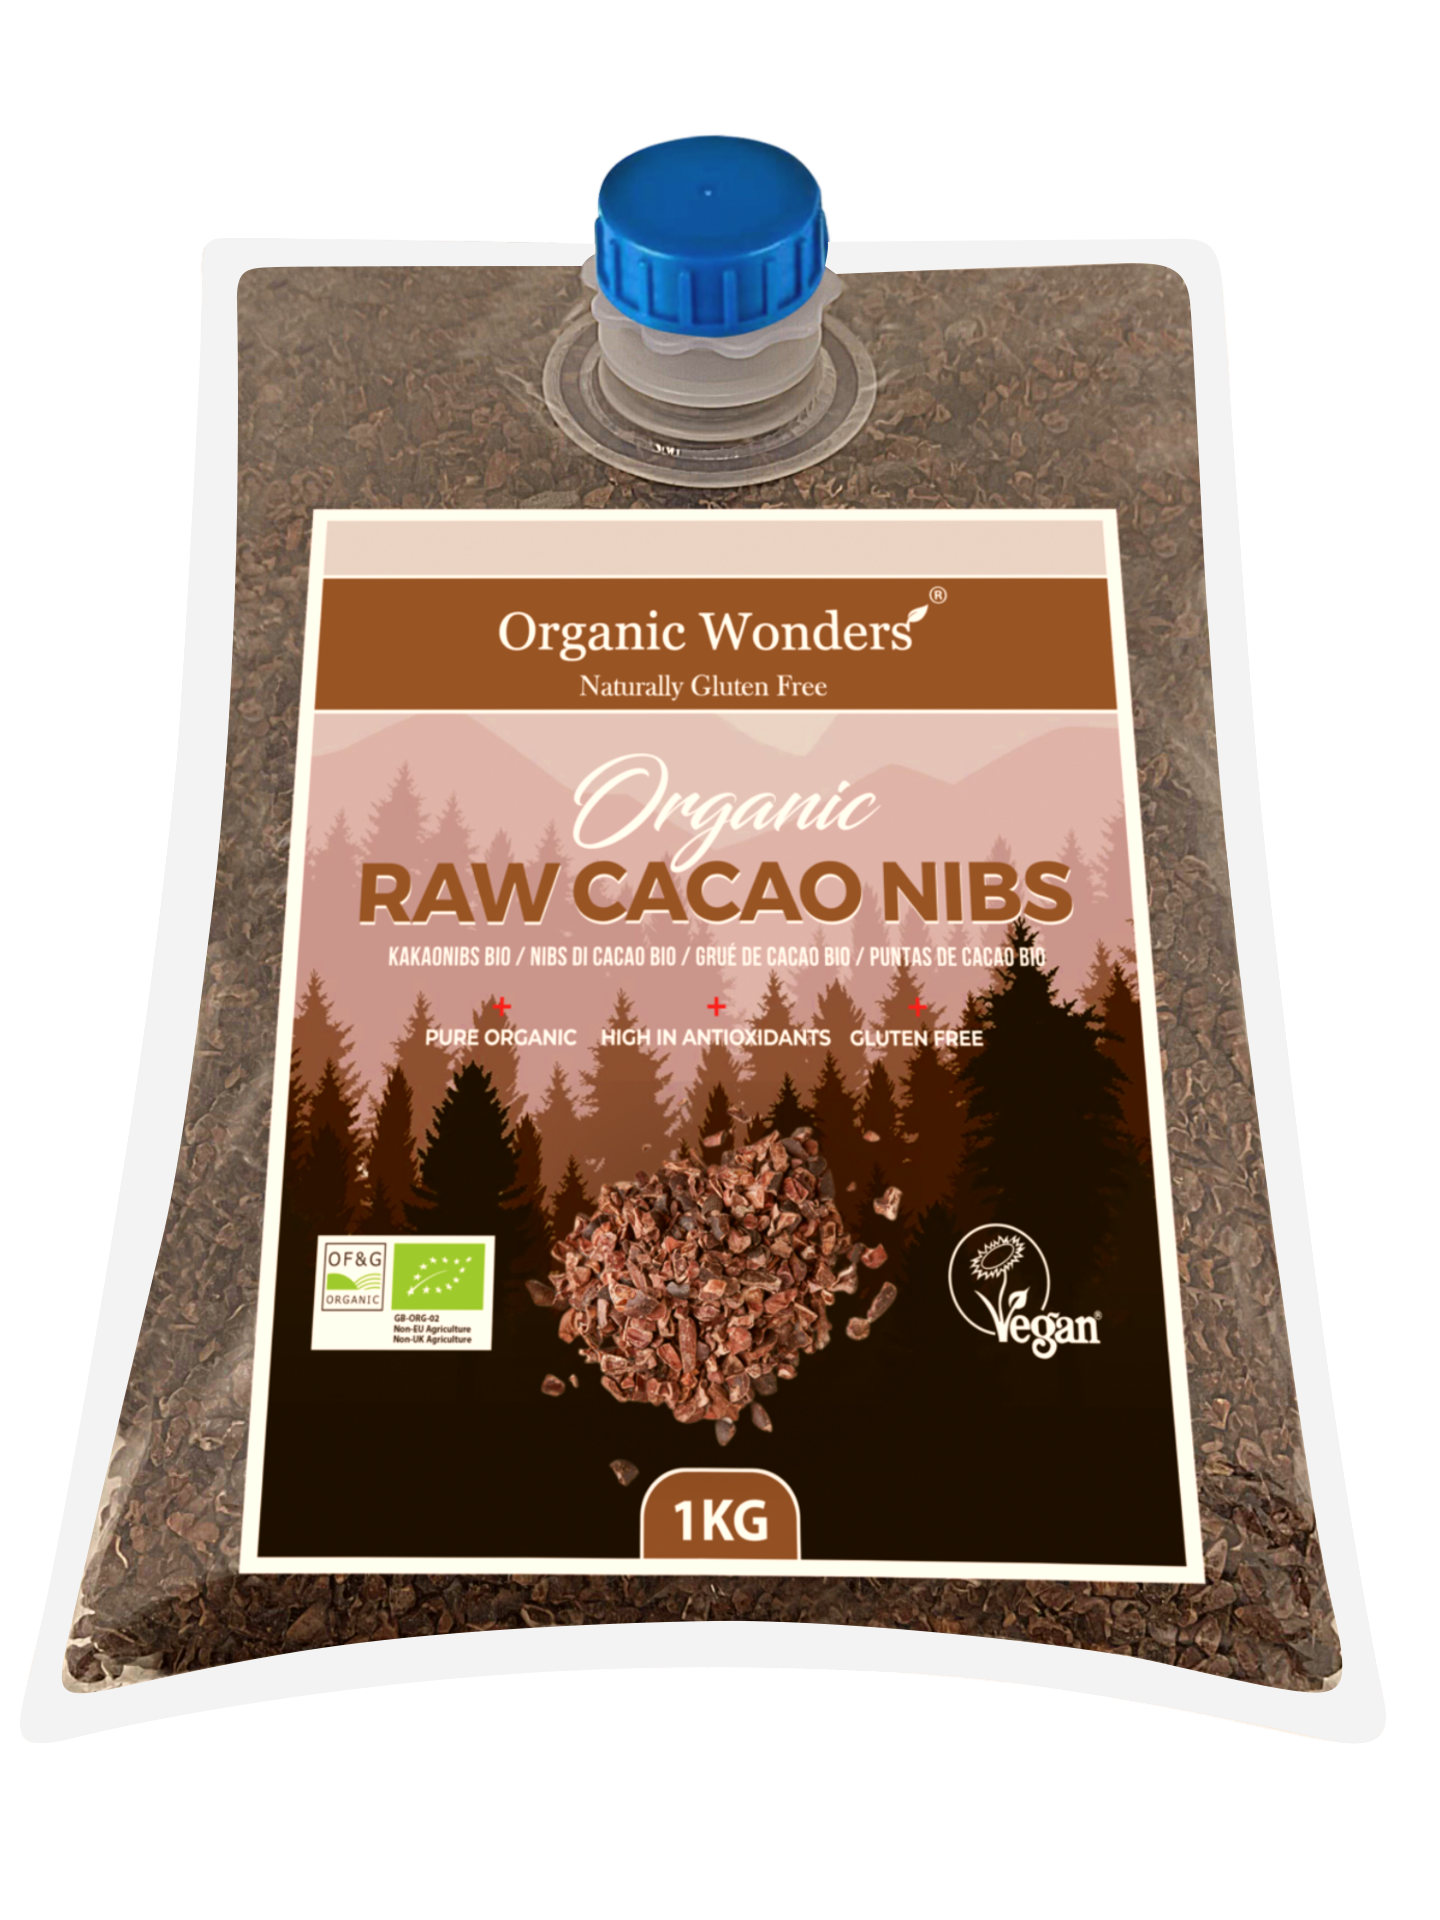 Organic Cacao Nibs 1kg | Organic Wonders UK